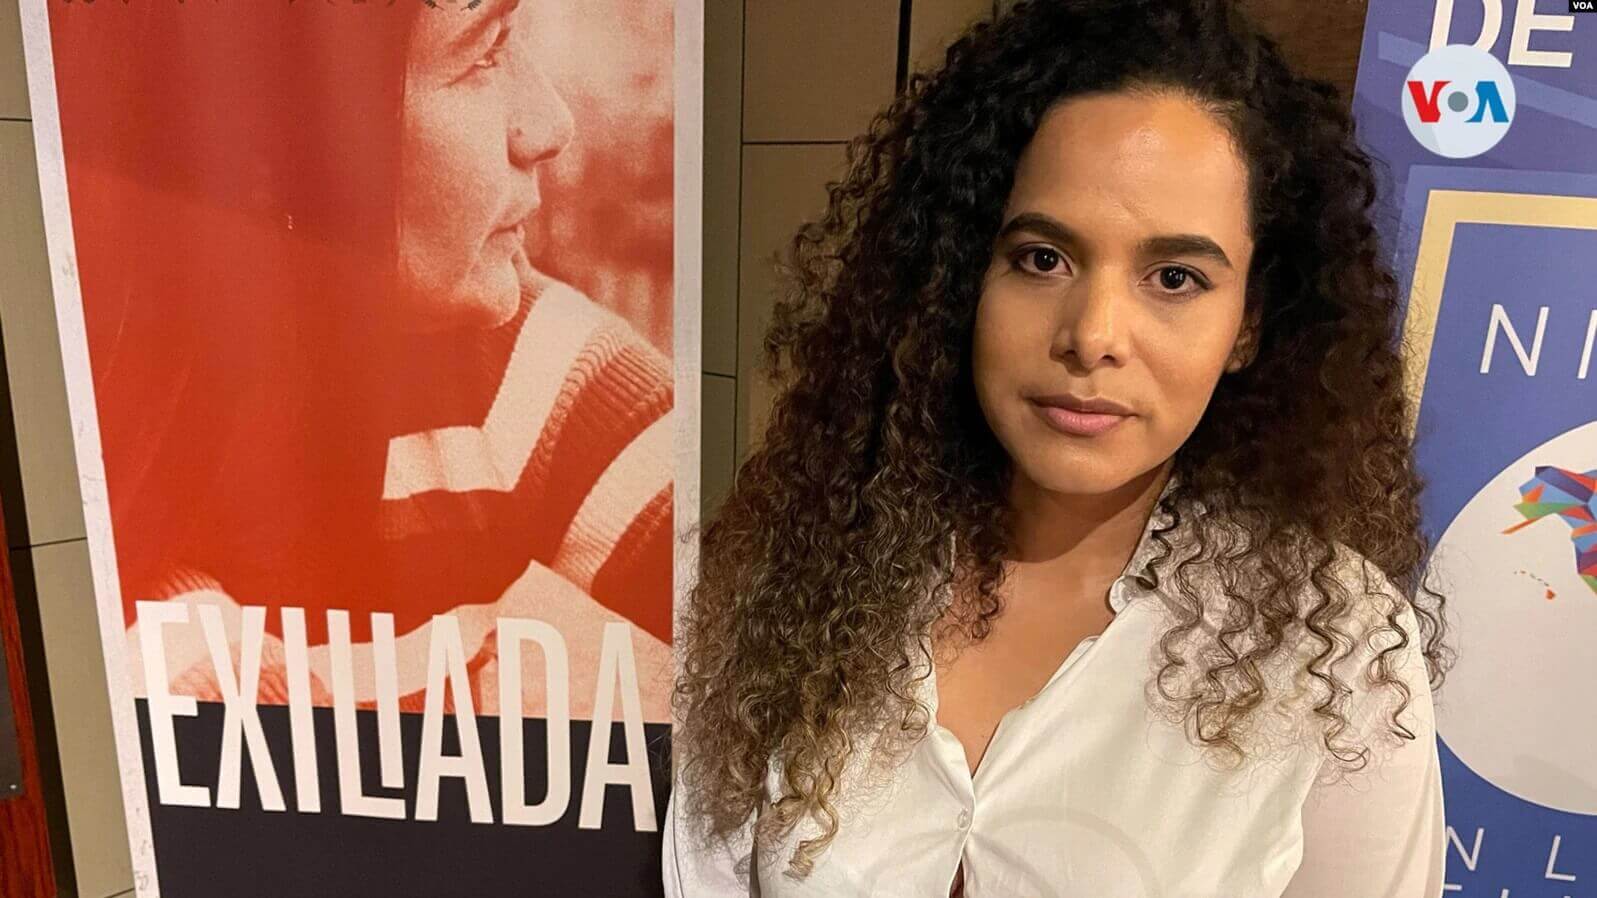 La cineasta Leonor Zúniga posa frente al cartel del documental ‘Exiliada’ que presentó en el marco de la IX Cumbre de las Américas. [Fotografía Antoni Belchi]